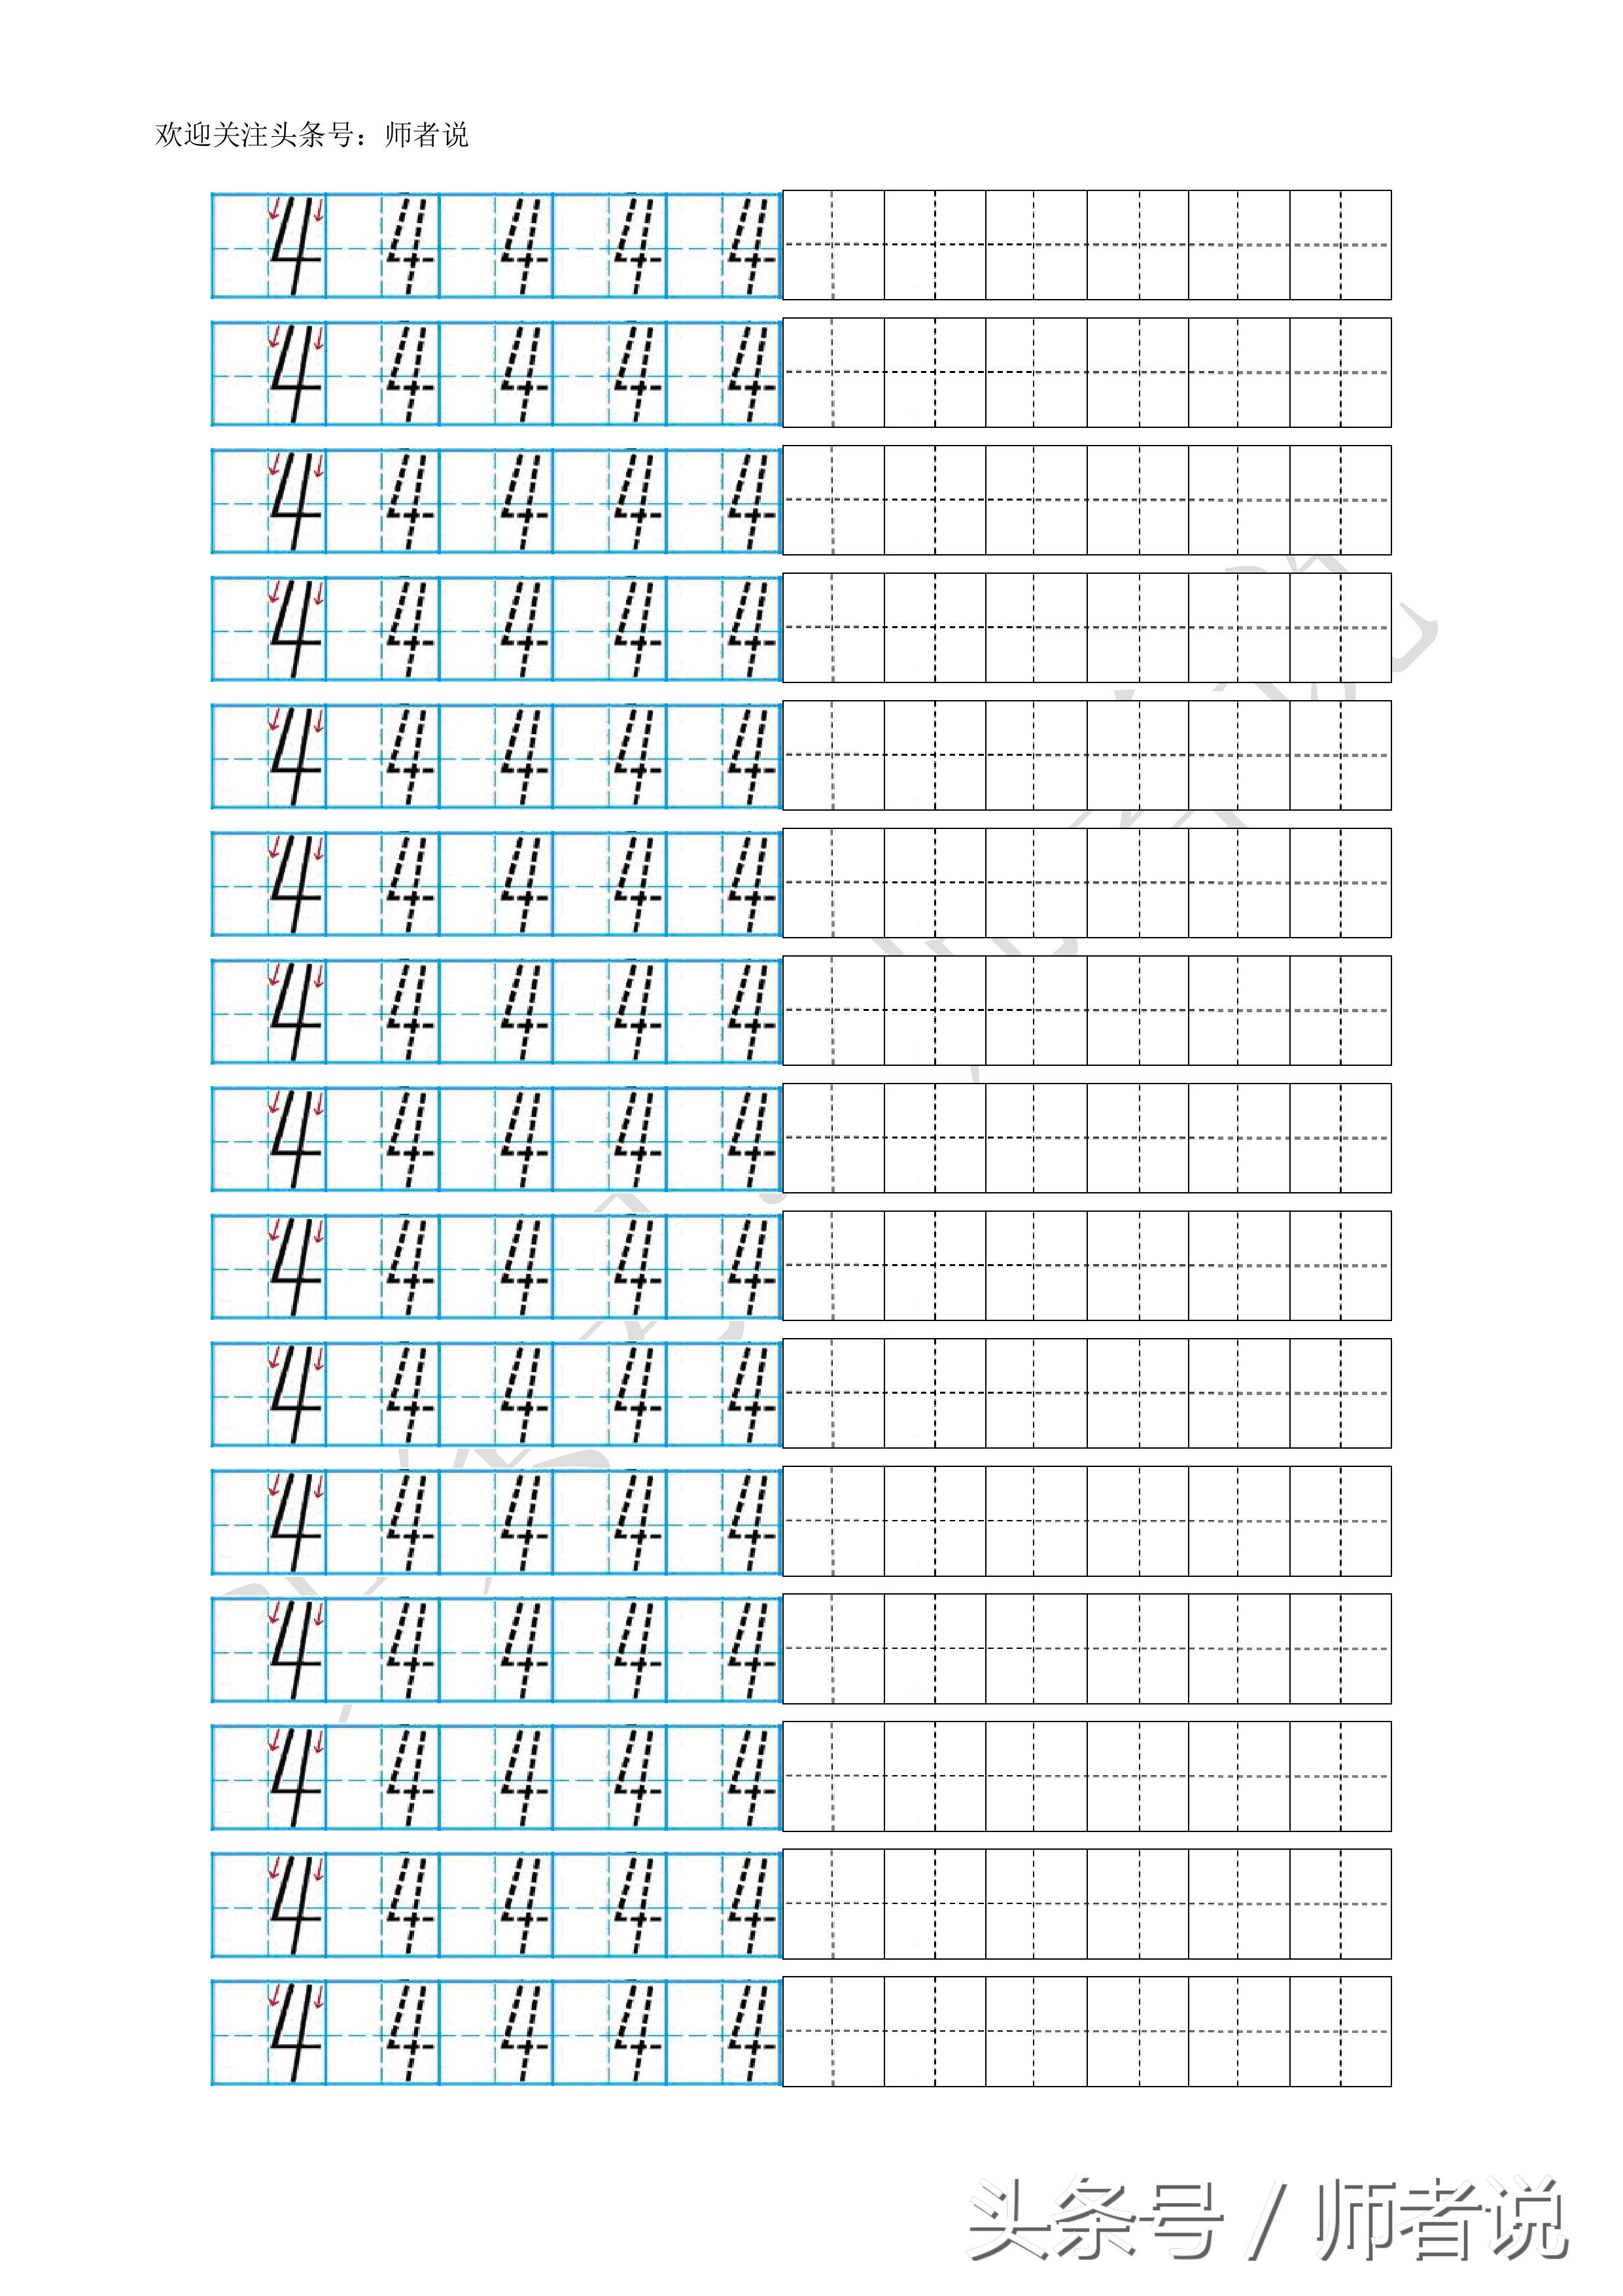 数字描红1到10打印（幼儿阿拉伯数字描红1-10打印版）(6)